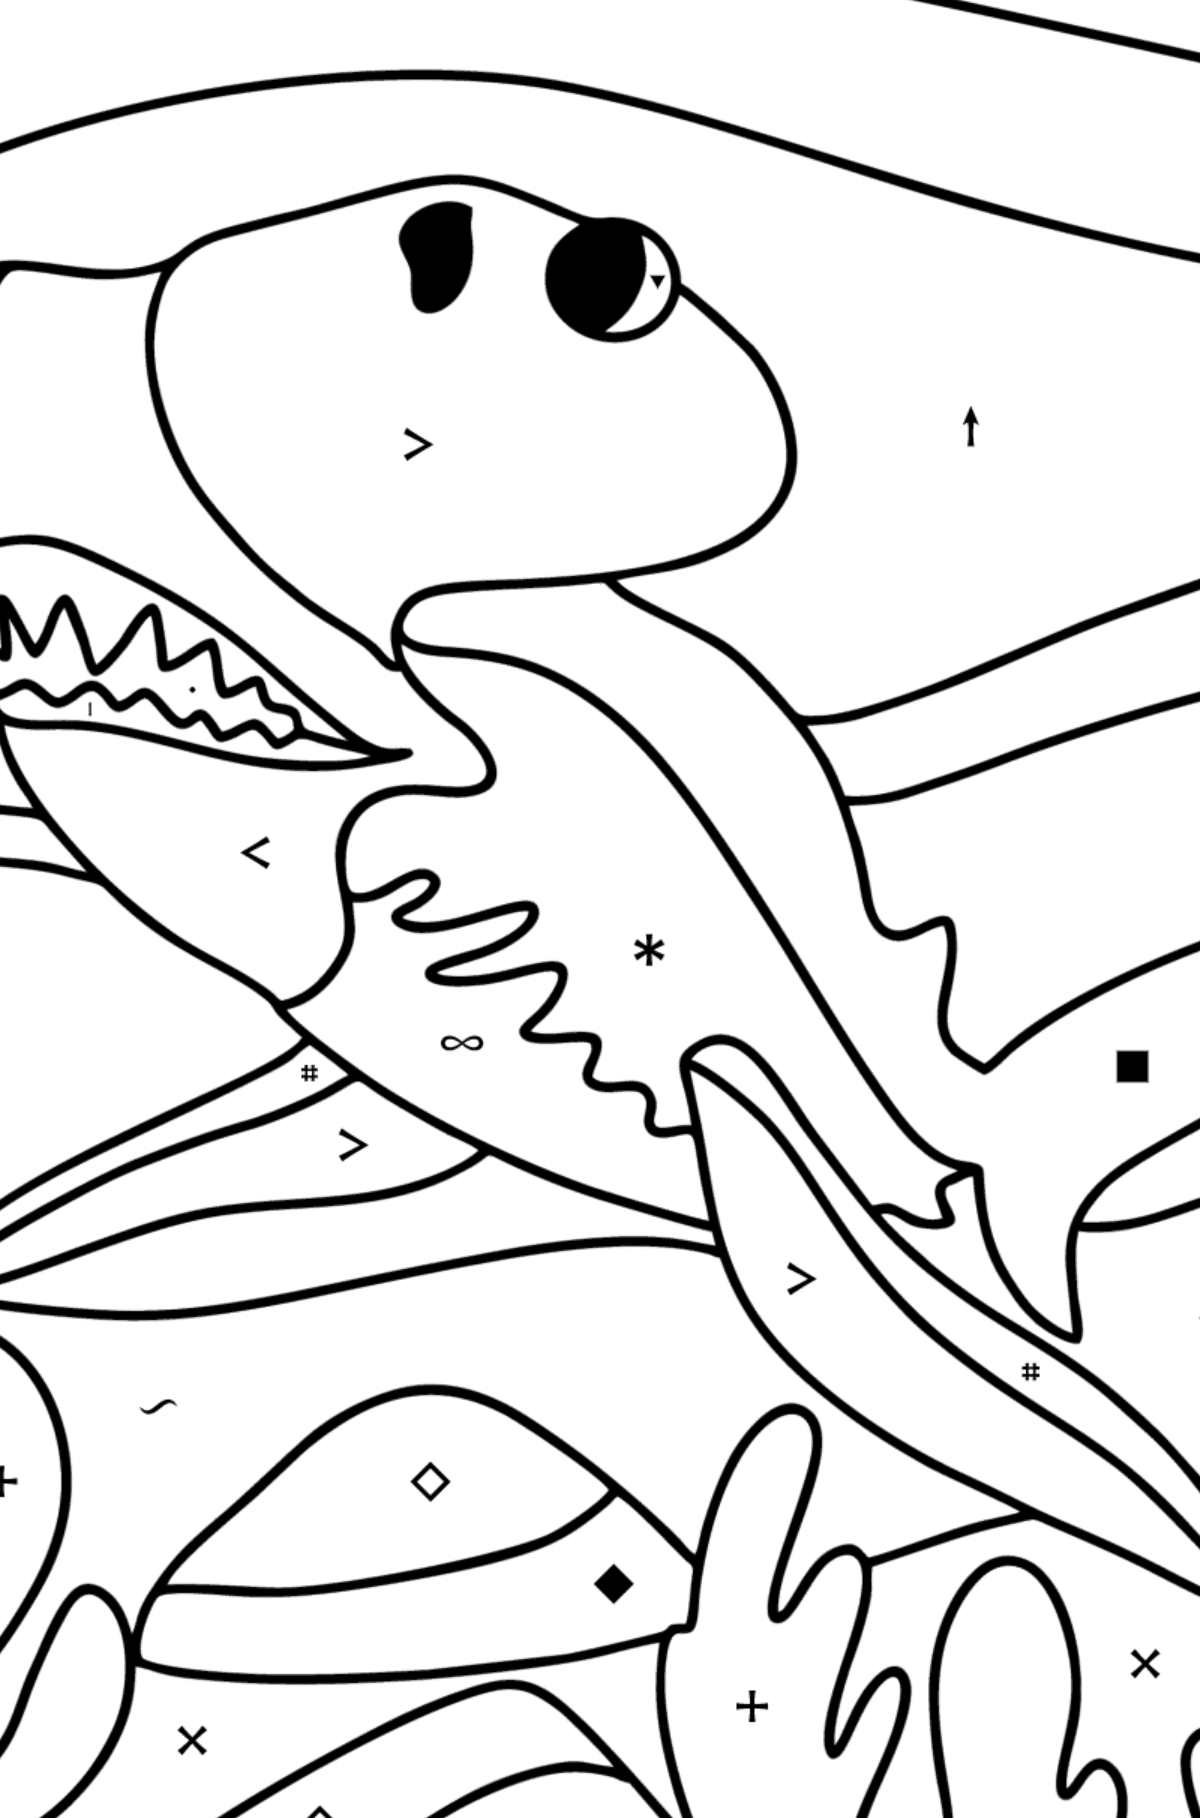 Coloriage Requin-marteau - Coloriage par Symboles pour les Enfants